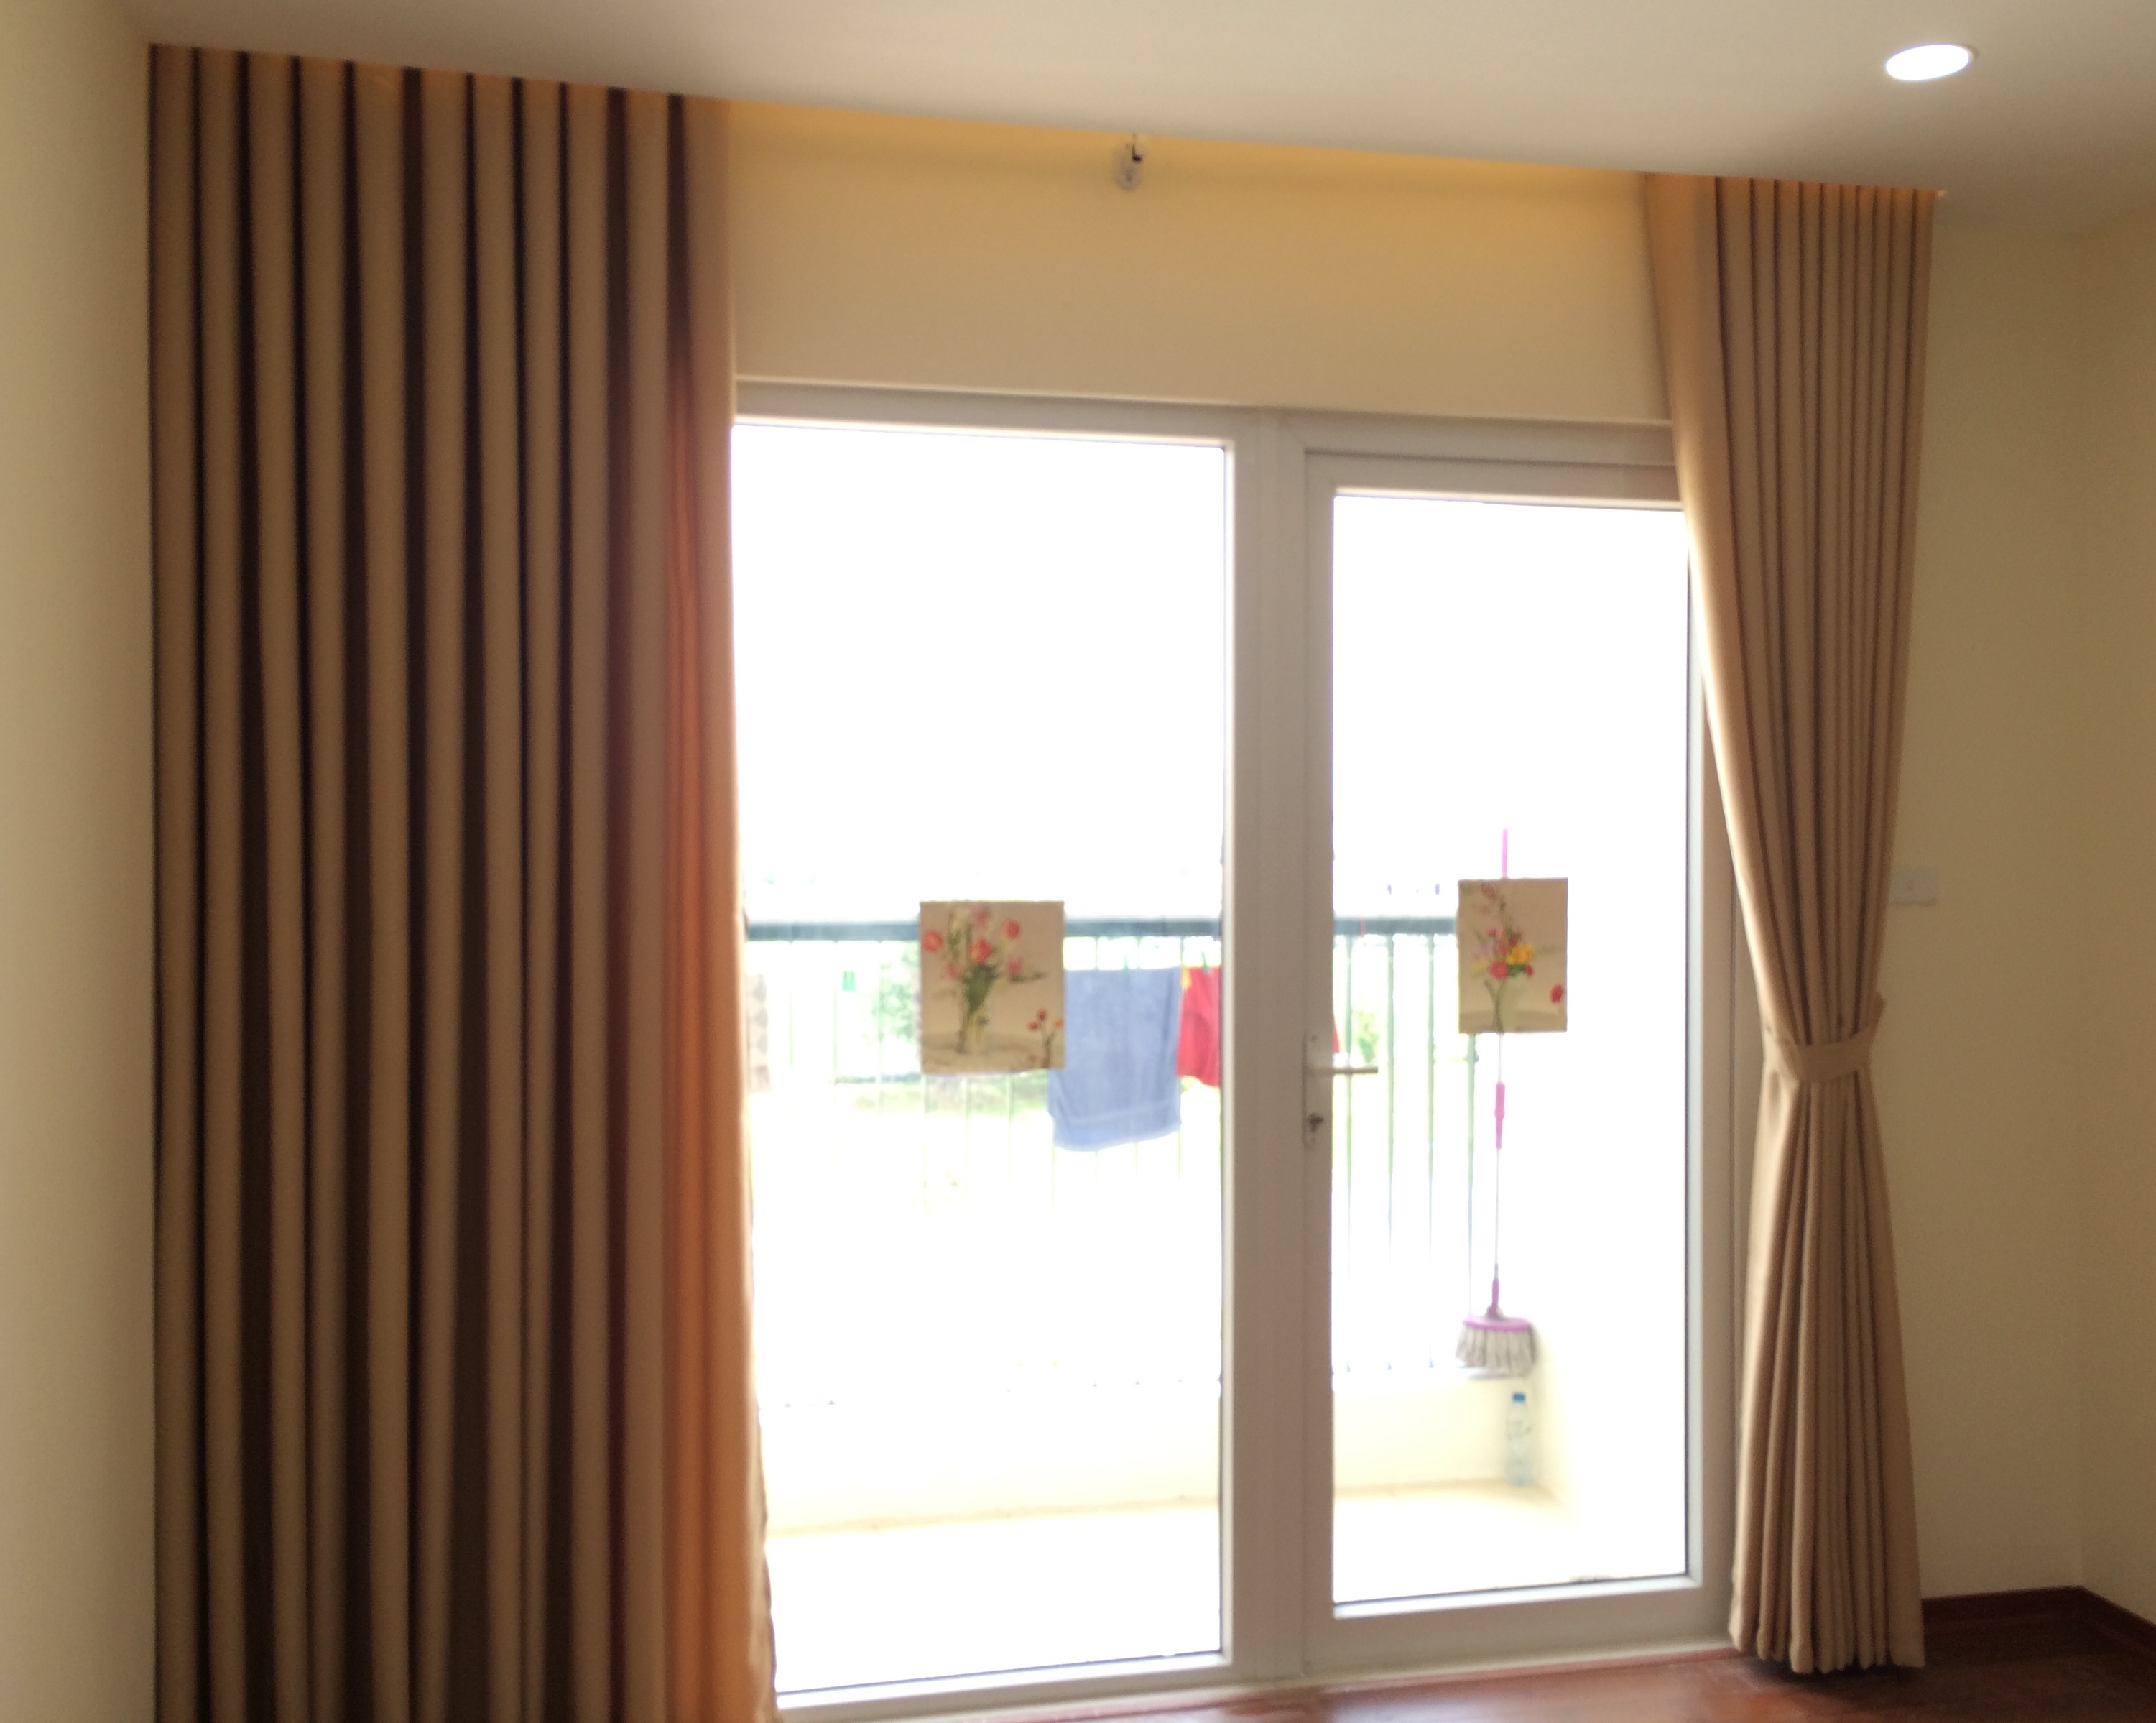 Rèm vải một màu HH-639 có màu kem rất dễ sử dụng và kết hợp với các món đồ nội thất trong căn nhà